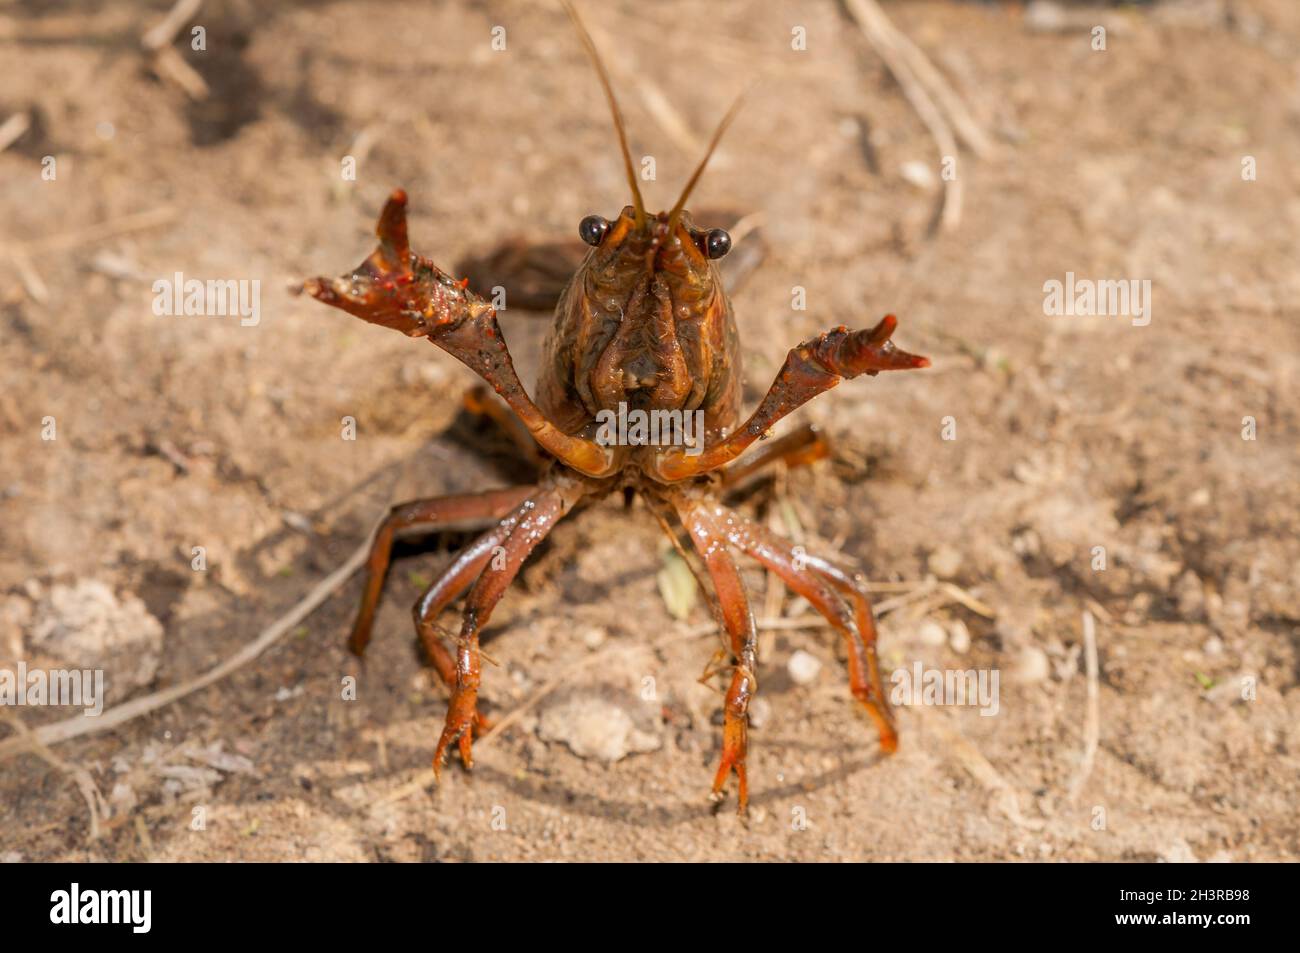 Procambarus clarkii, red swamp crayfish, aggressive position, invasive specie in ebro delta, Catalonia, Spain Stock Photo